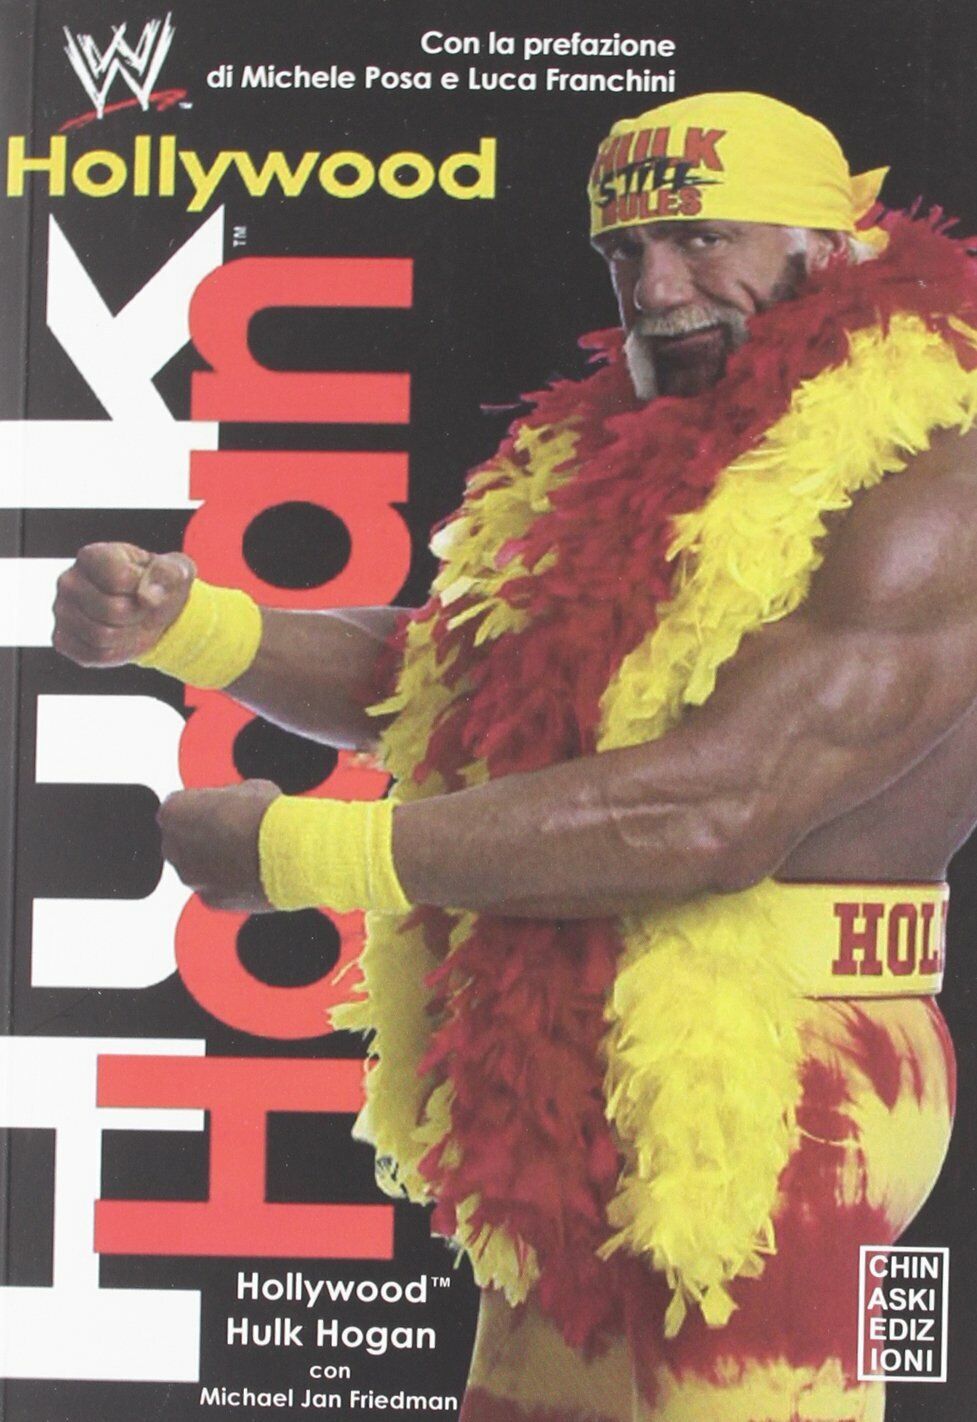 Hollywood Hulk Hogan - Hulk Hogan - Chinaski Edizioni, 2011